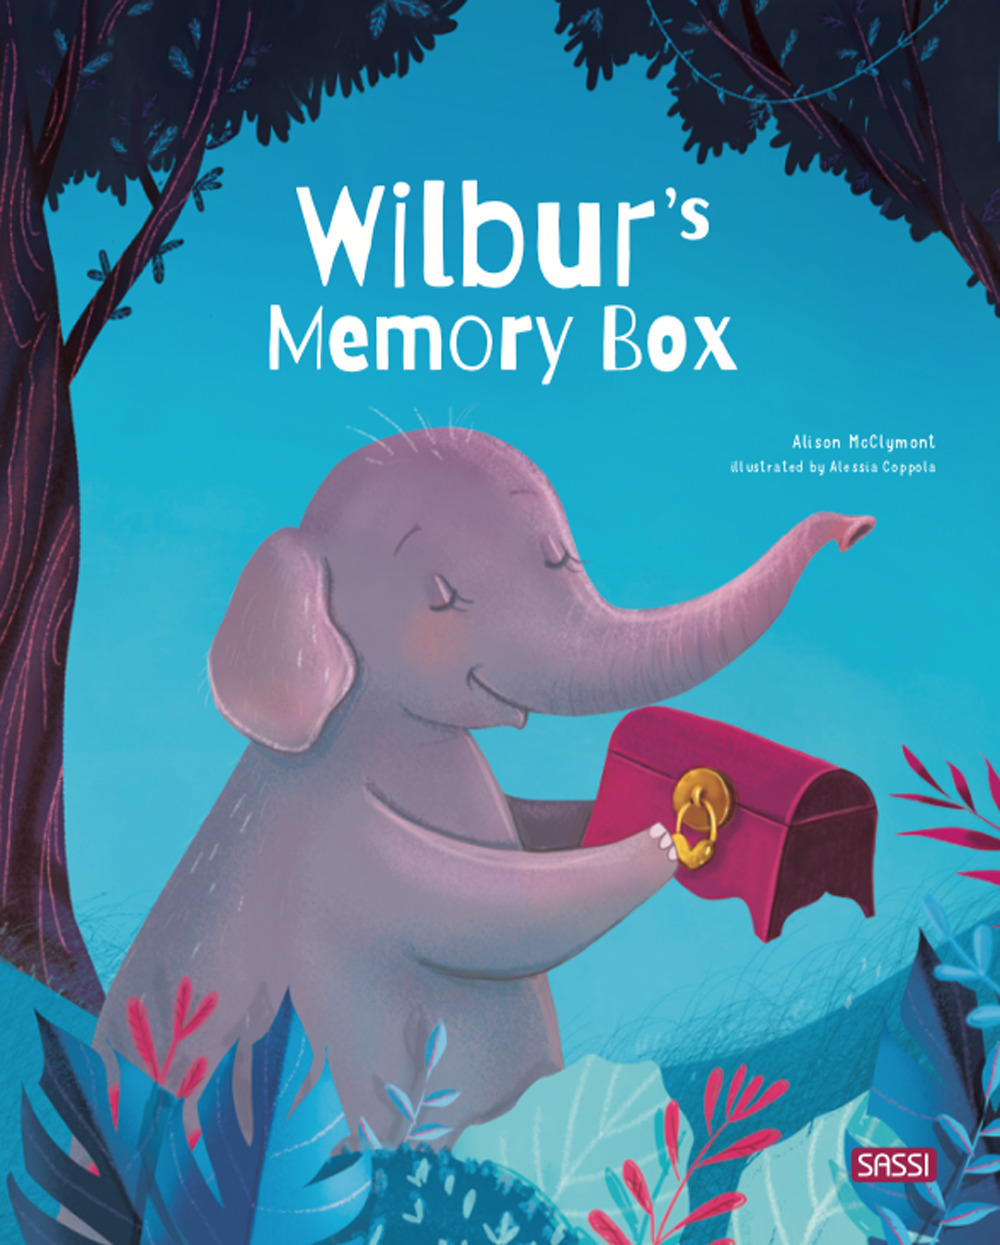 Wilbur's memory box